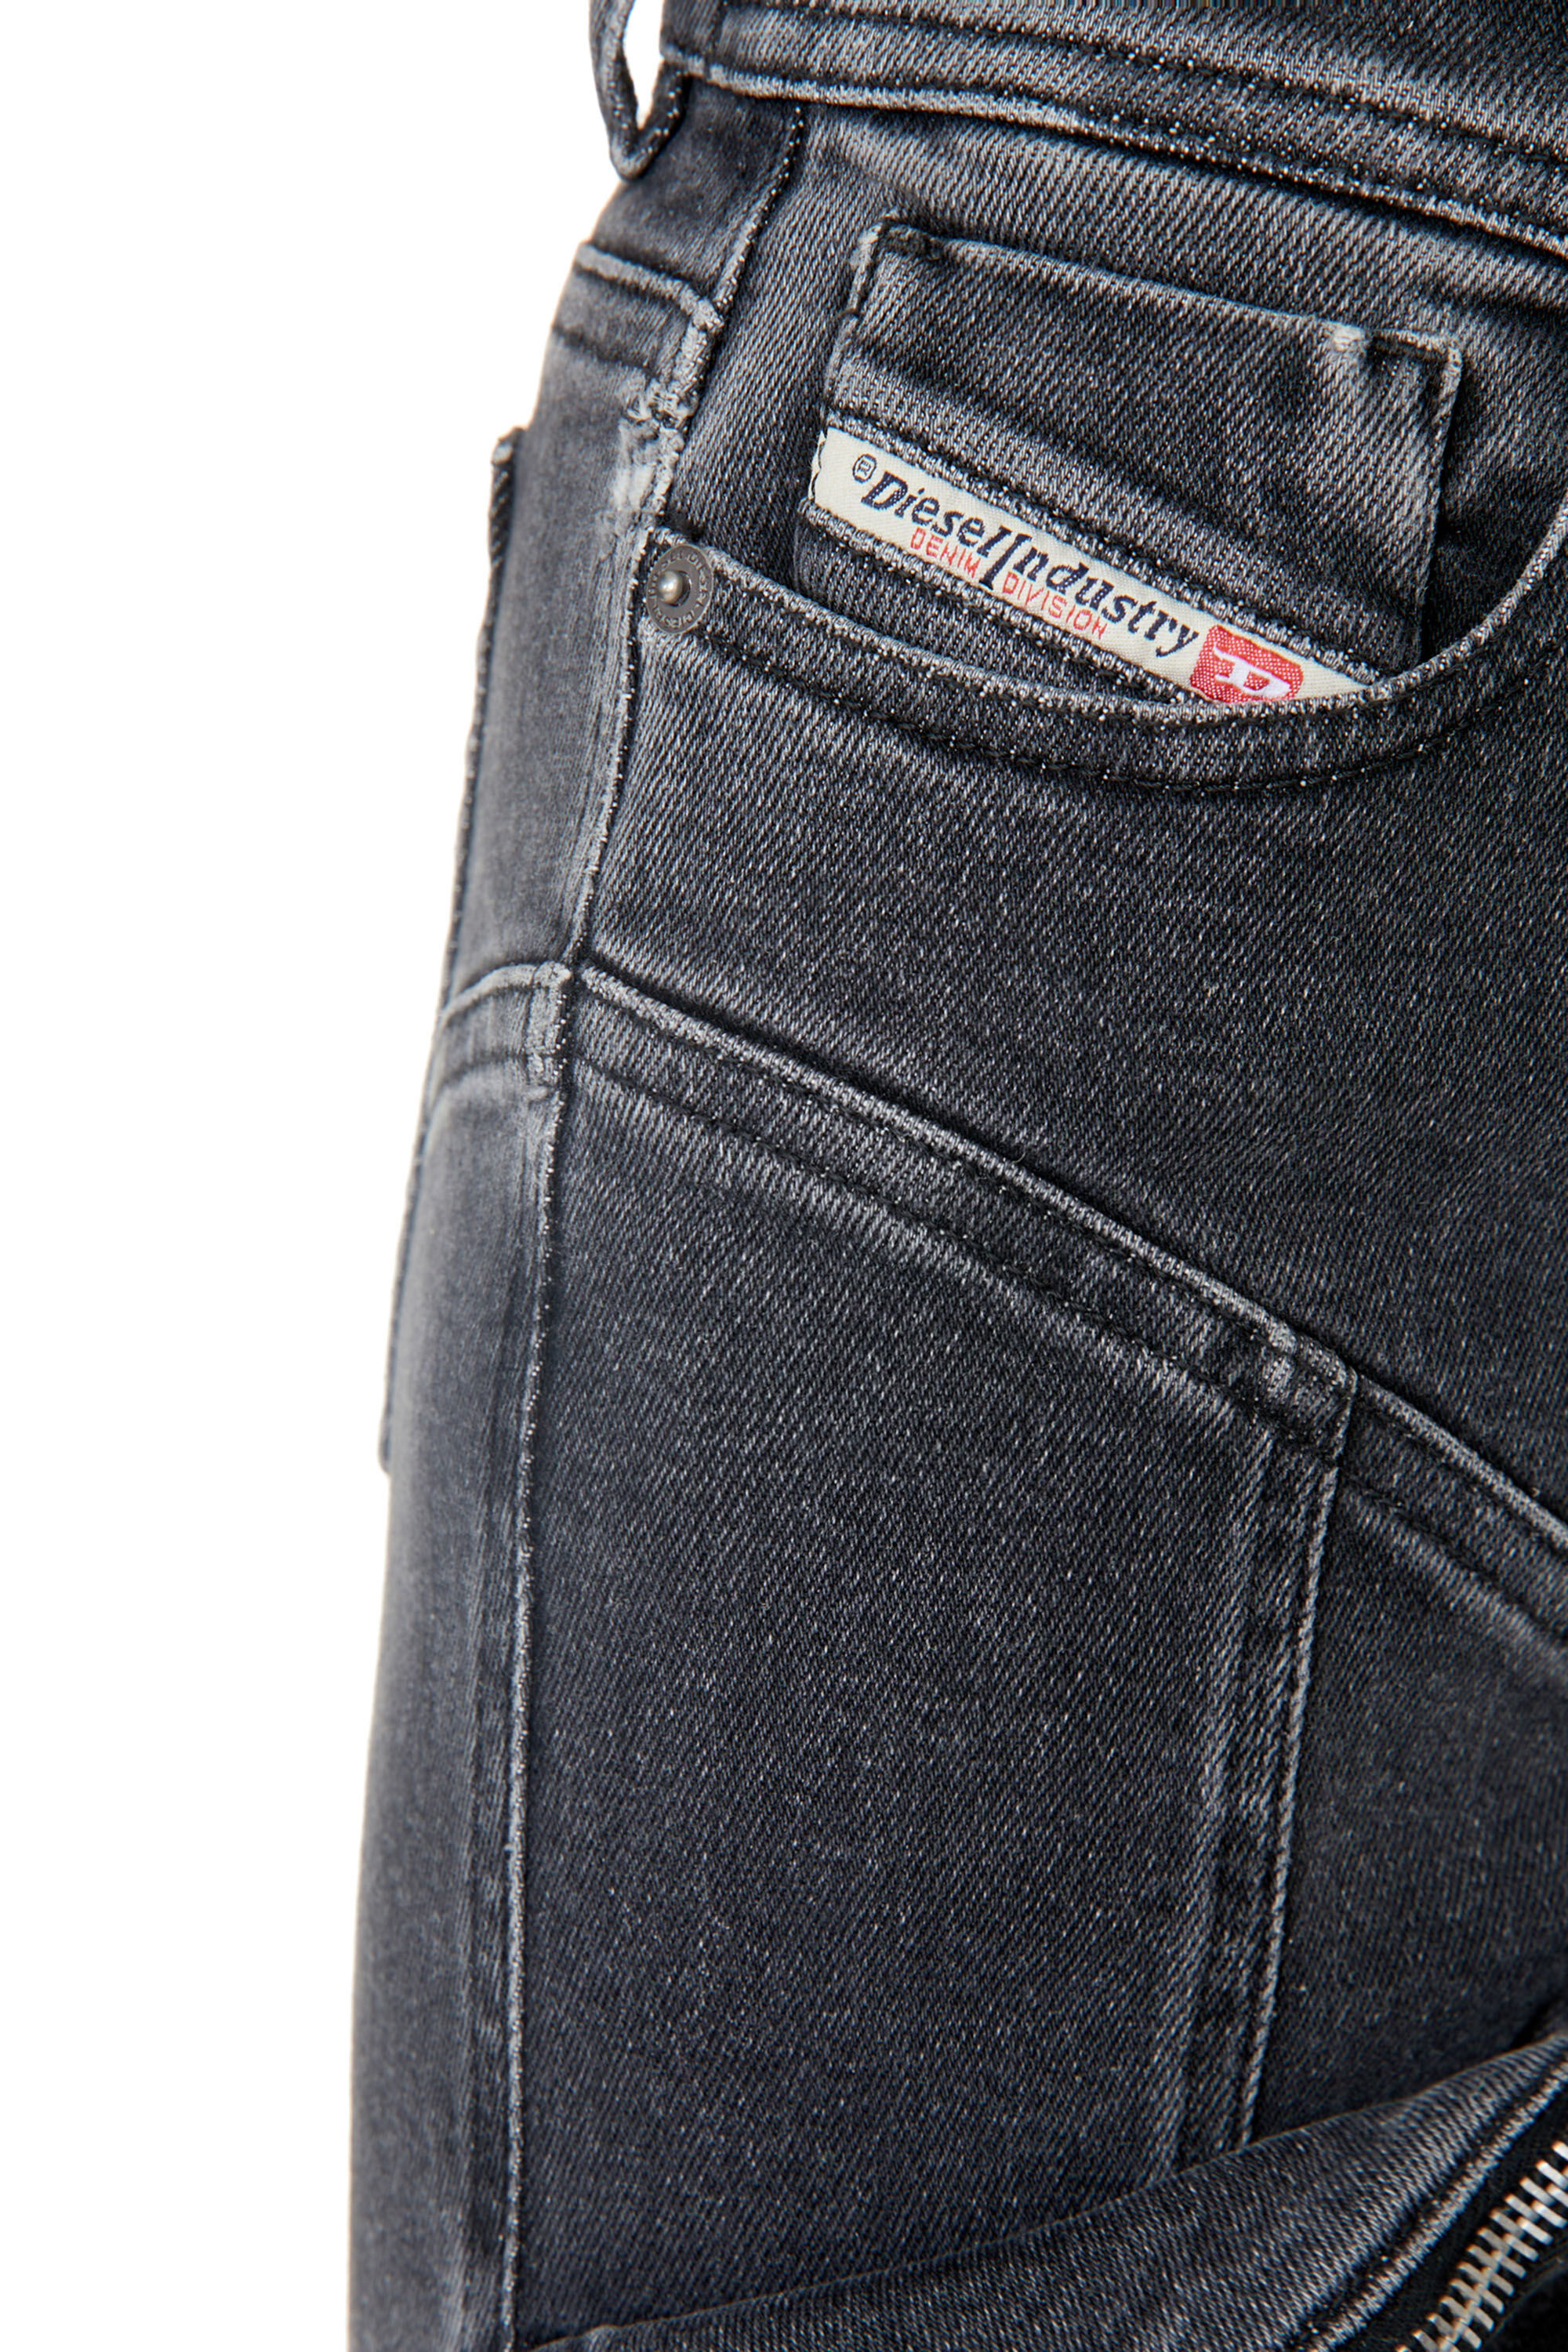 Diesel - Super skinny Jeans 1984 Slandy-High 09F27, Black/Dark grey - Image 6